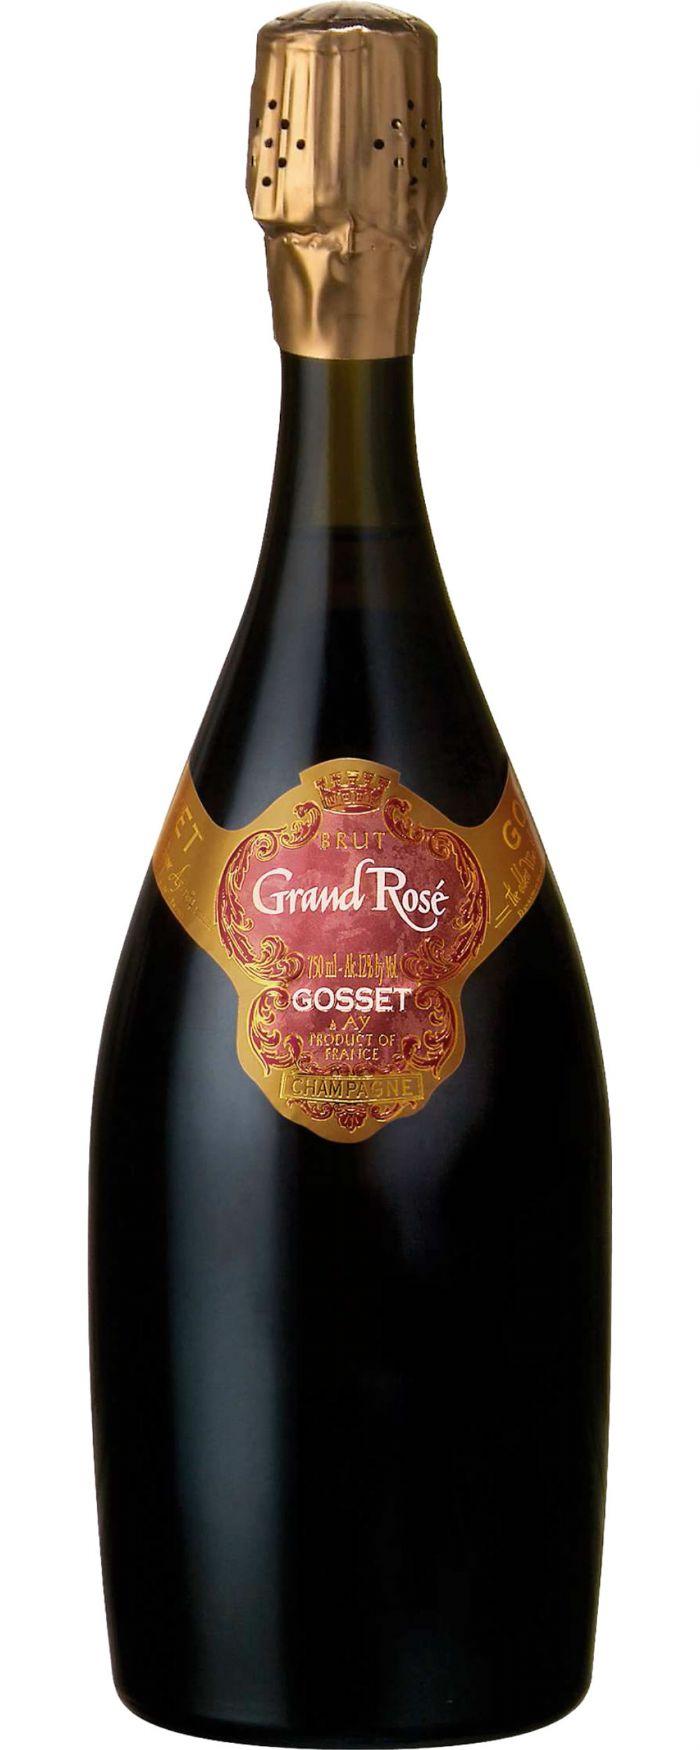 NV Gosset Grande Rose Brut Champagne - click image for full description